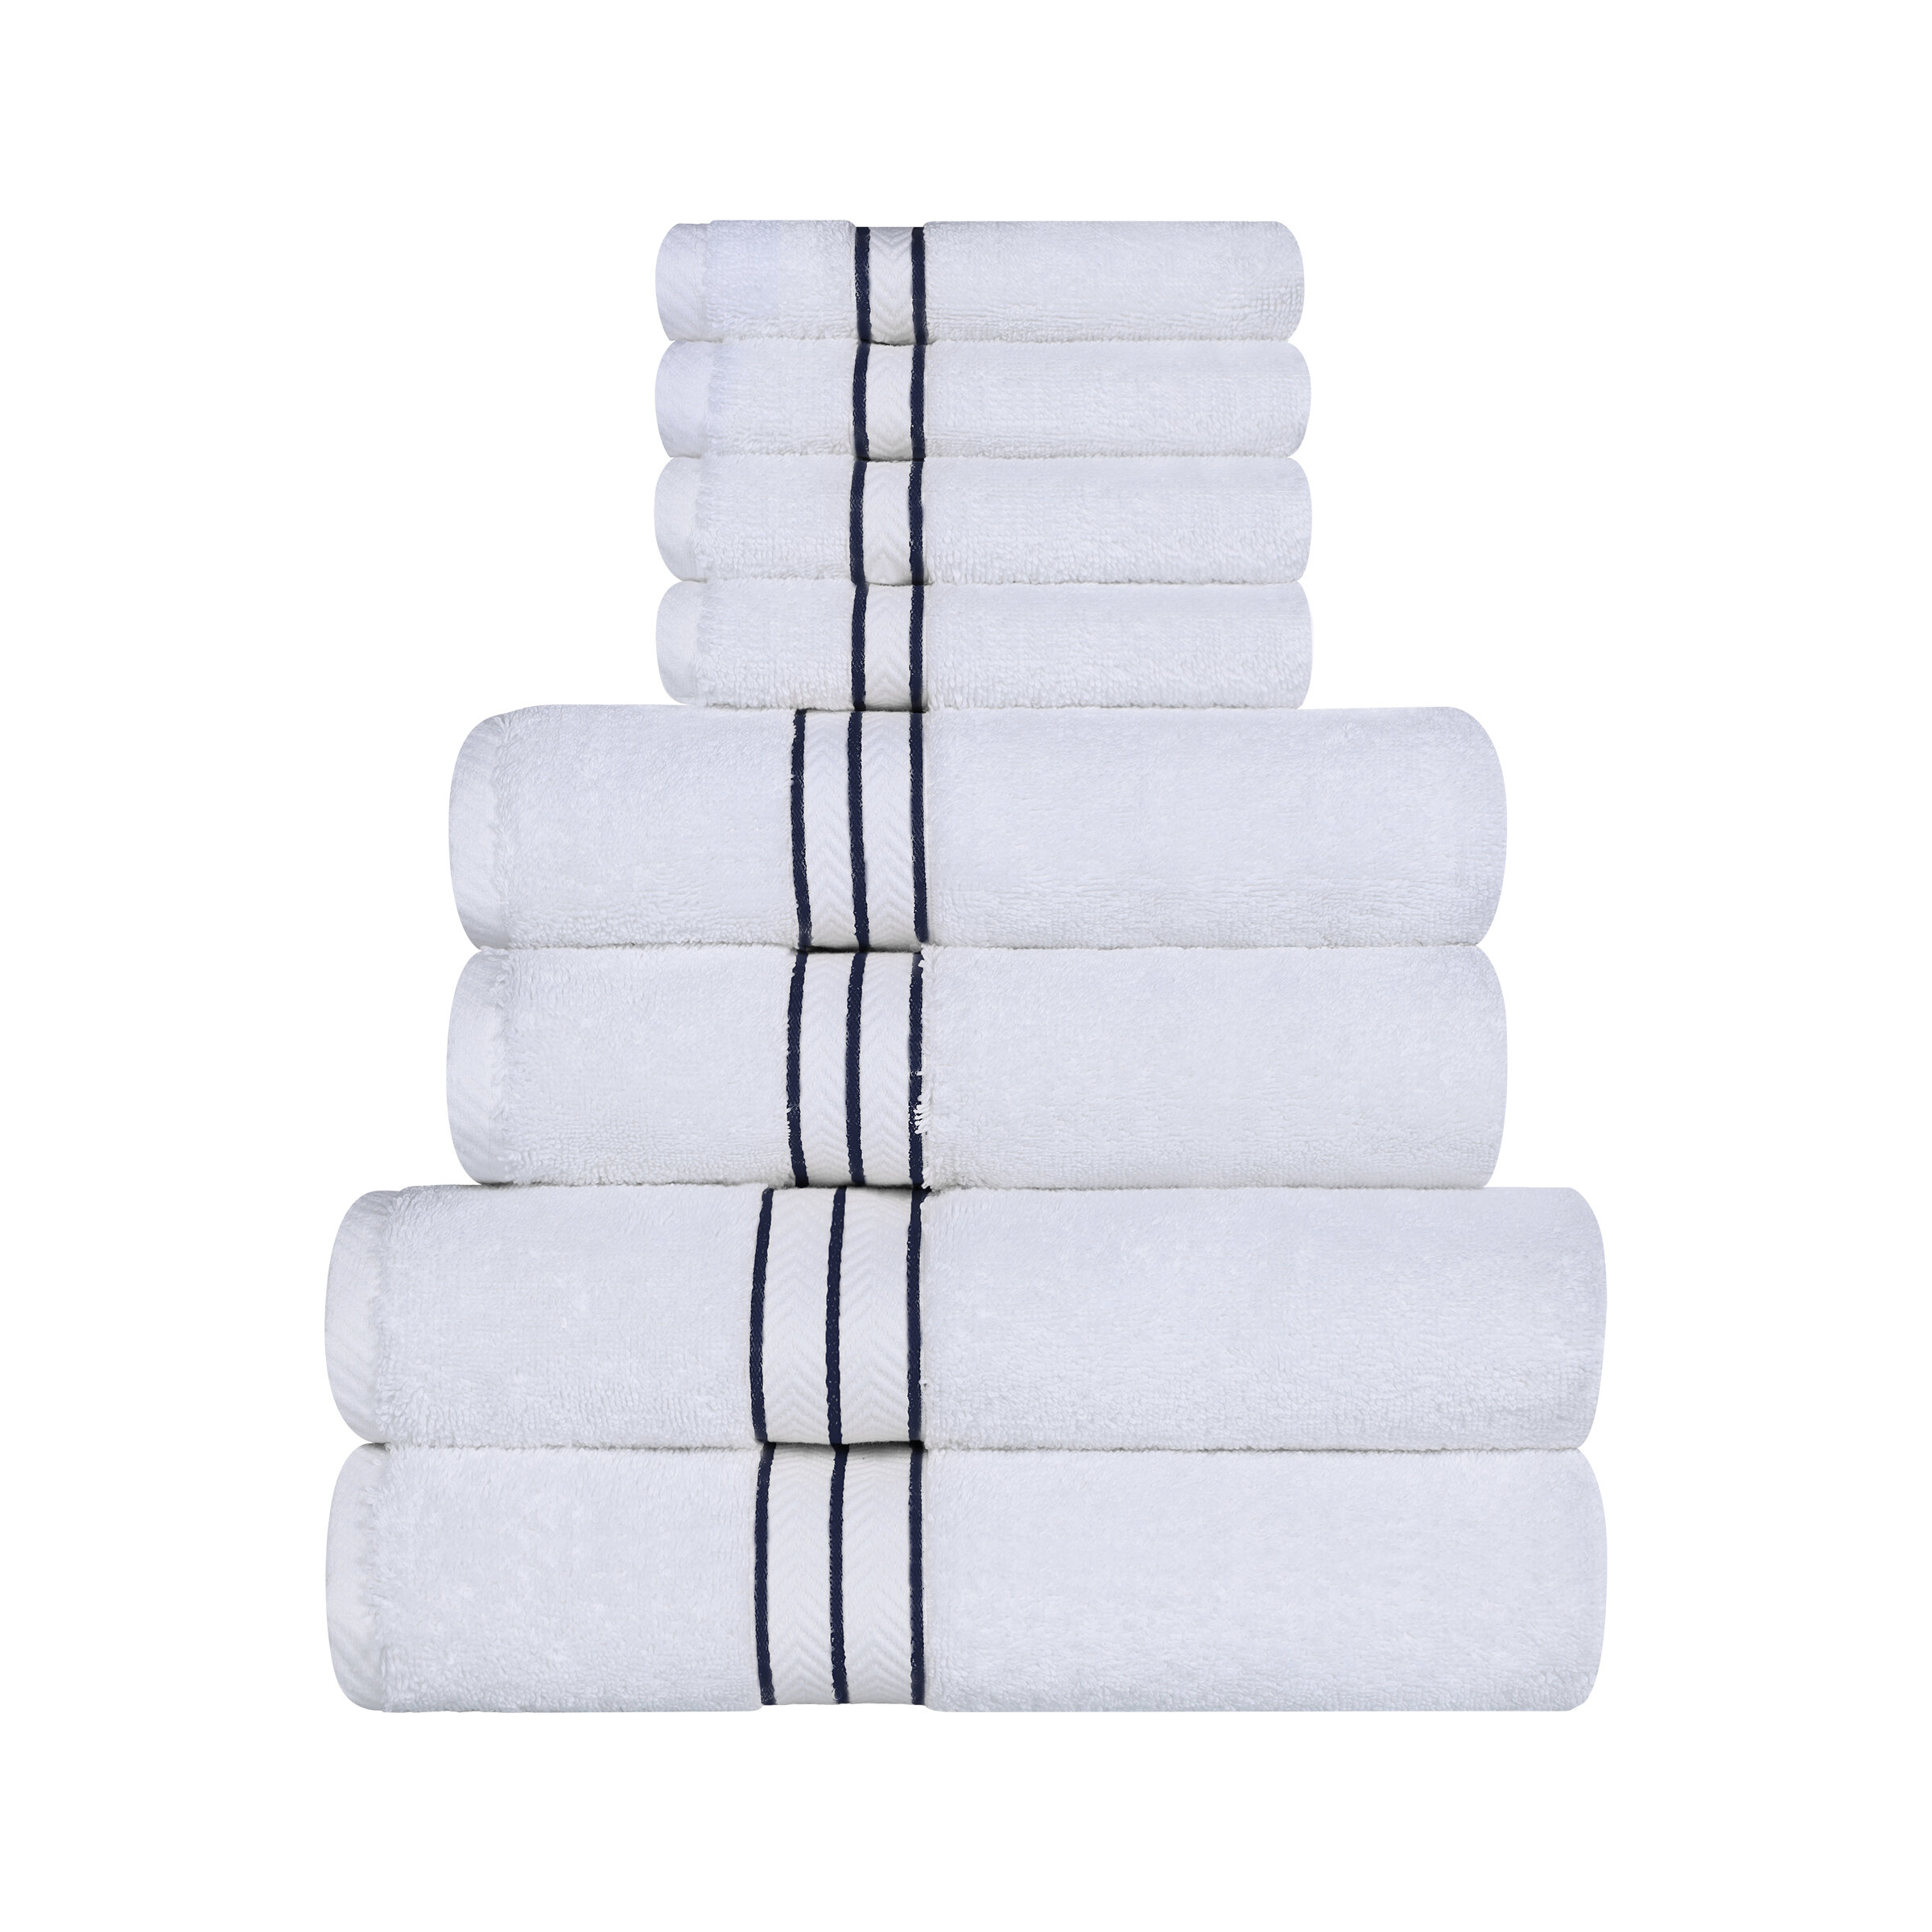 https://assets.wfcdn.com/im/20054314/compr-r85/1569/156961932/josann-800-gsm-solid-highly-absorbent-8-piece-100-turkish-cotton-towel-set.jpg